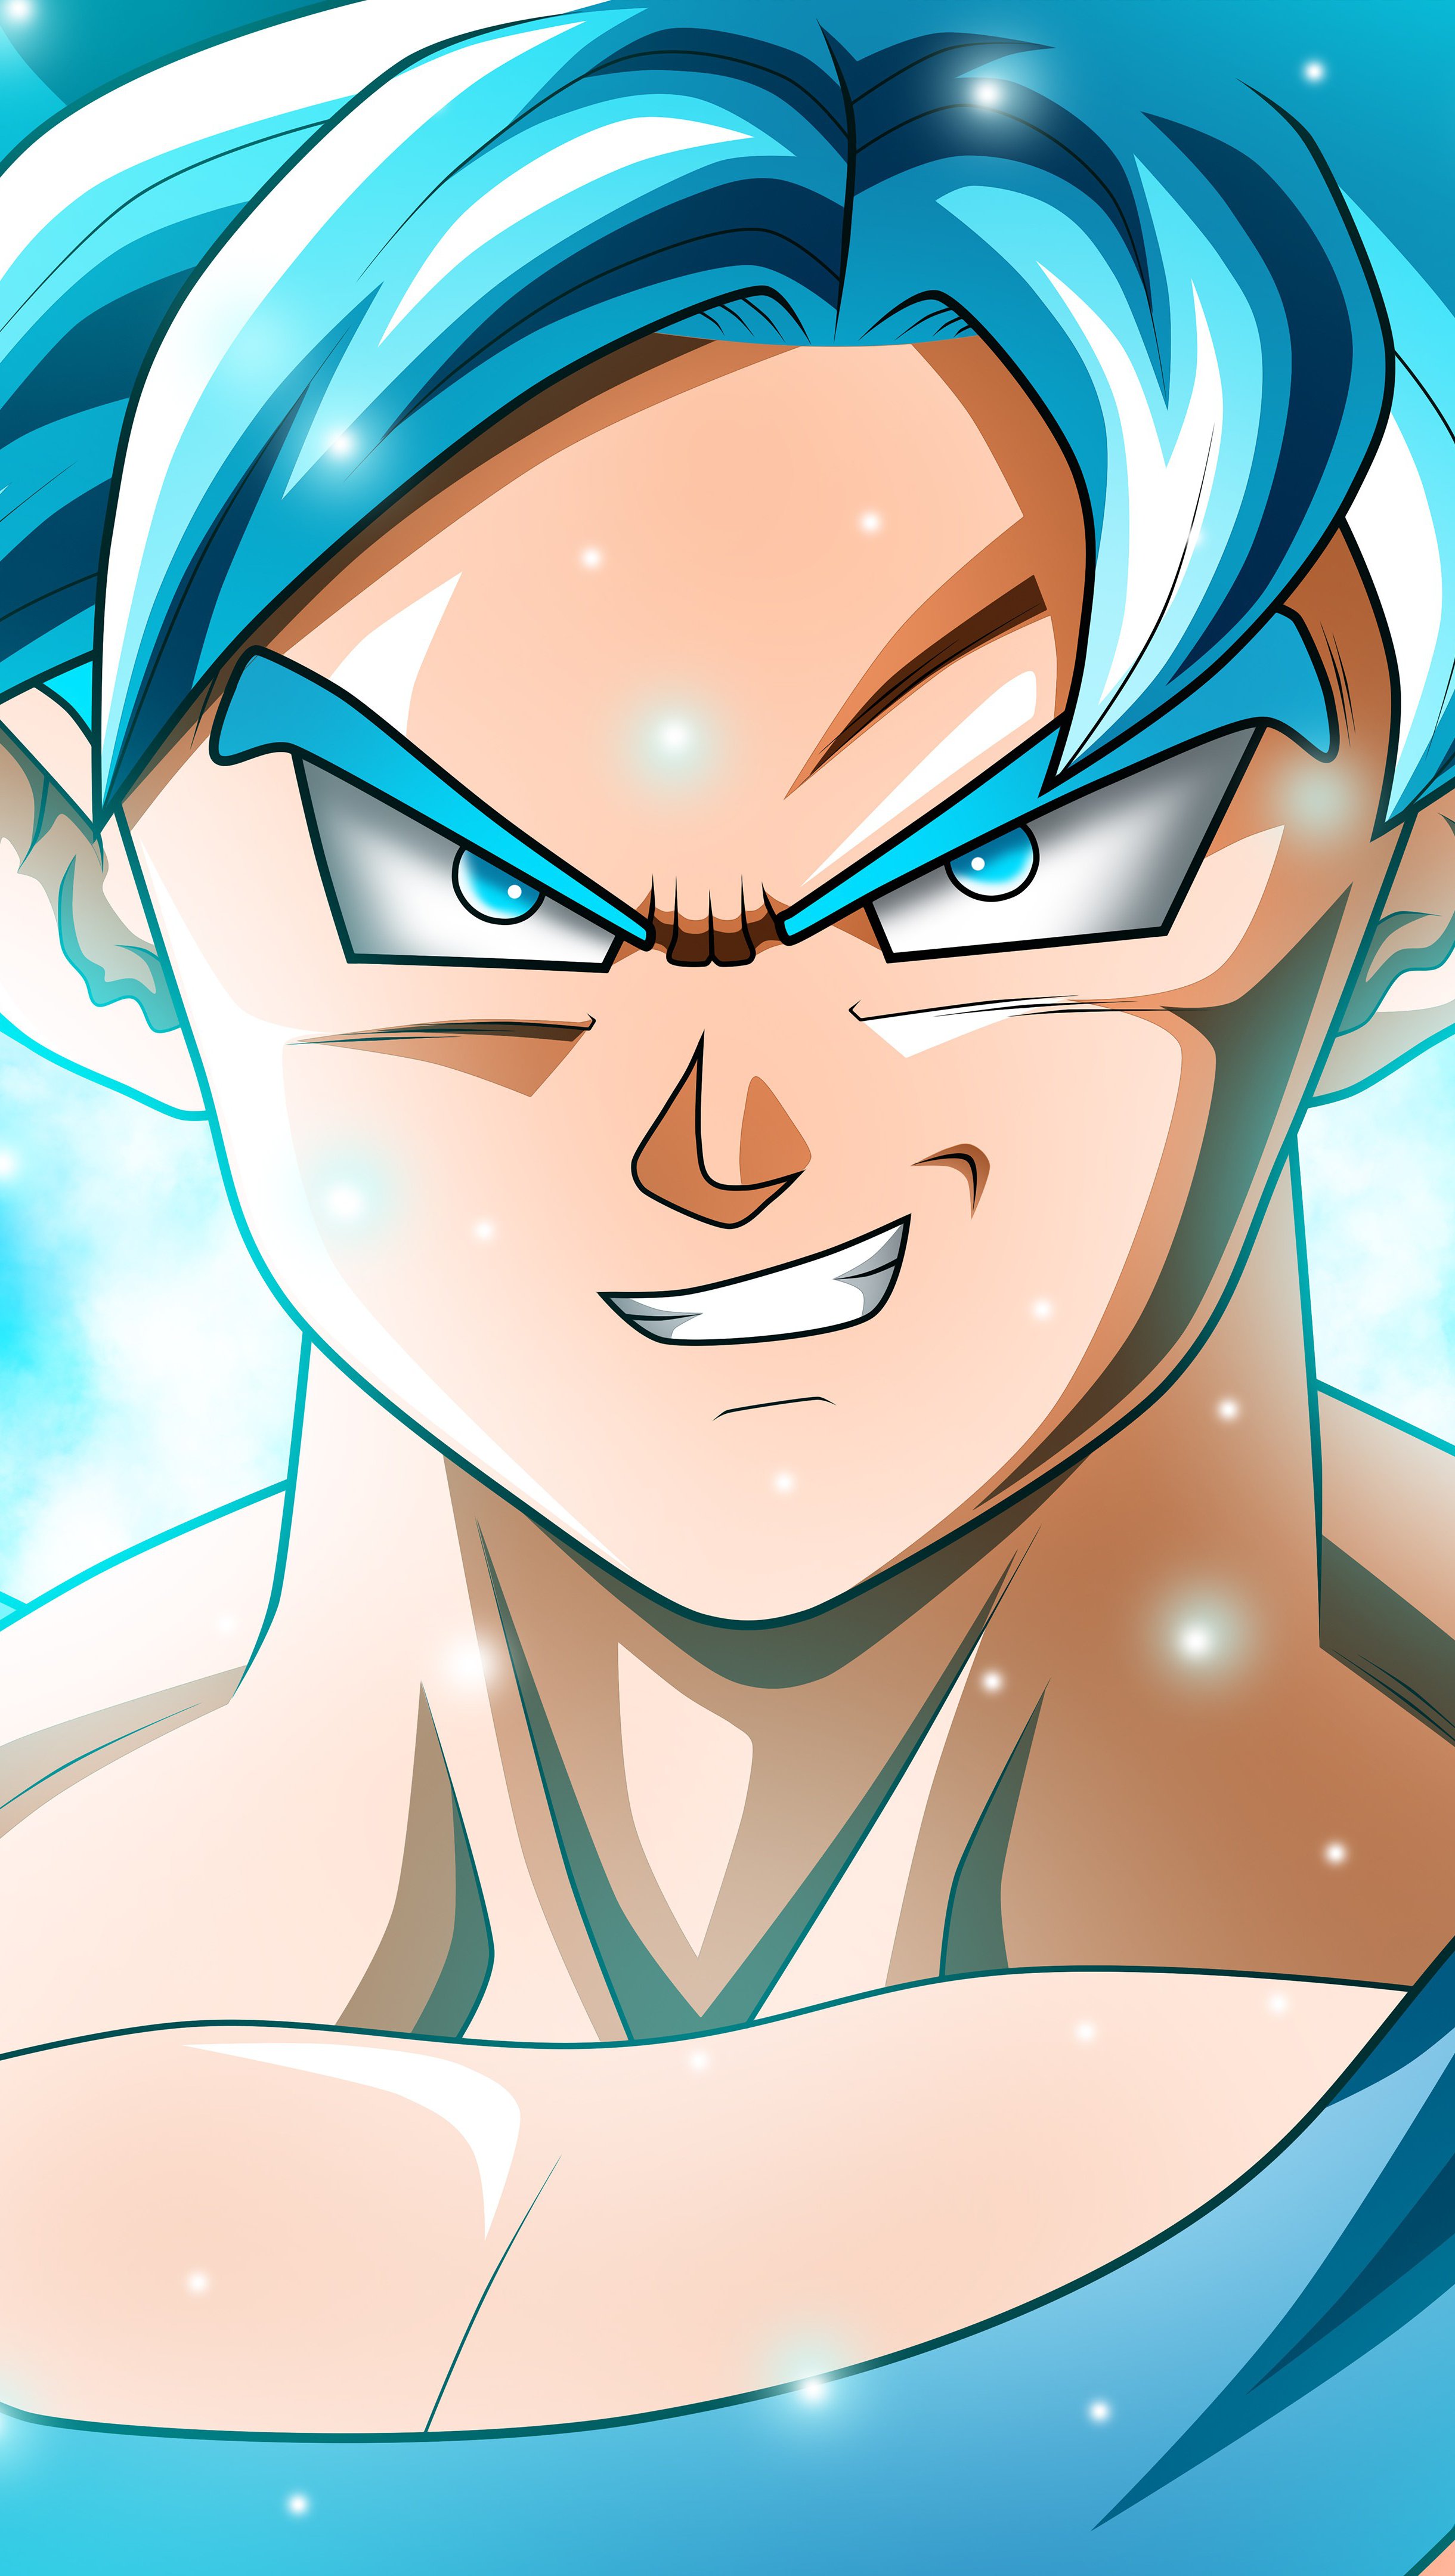 Fondos de pantalla Anime Goku Super Saiyan Blue de Dragon Ball Super Vertical